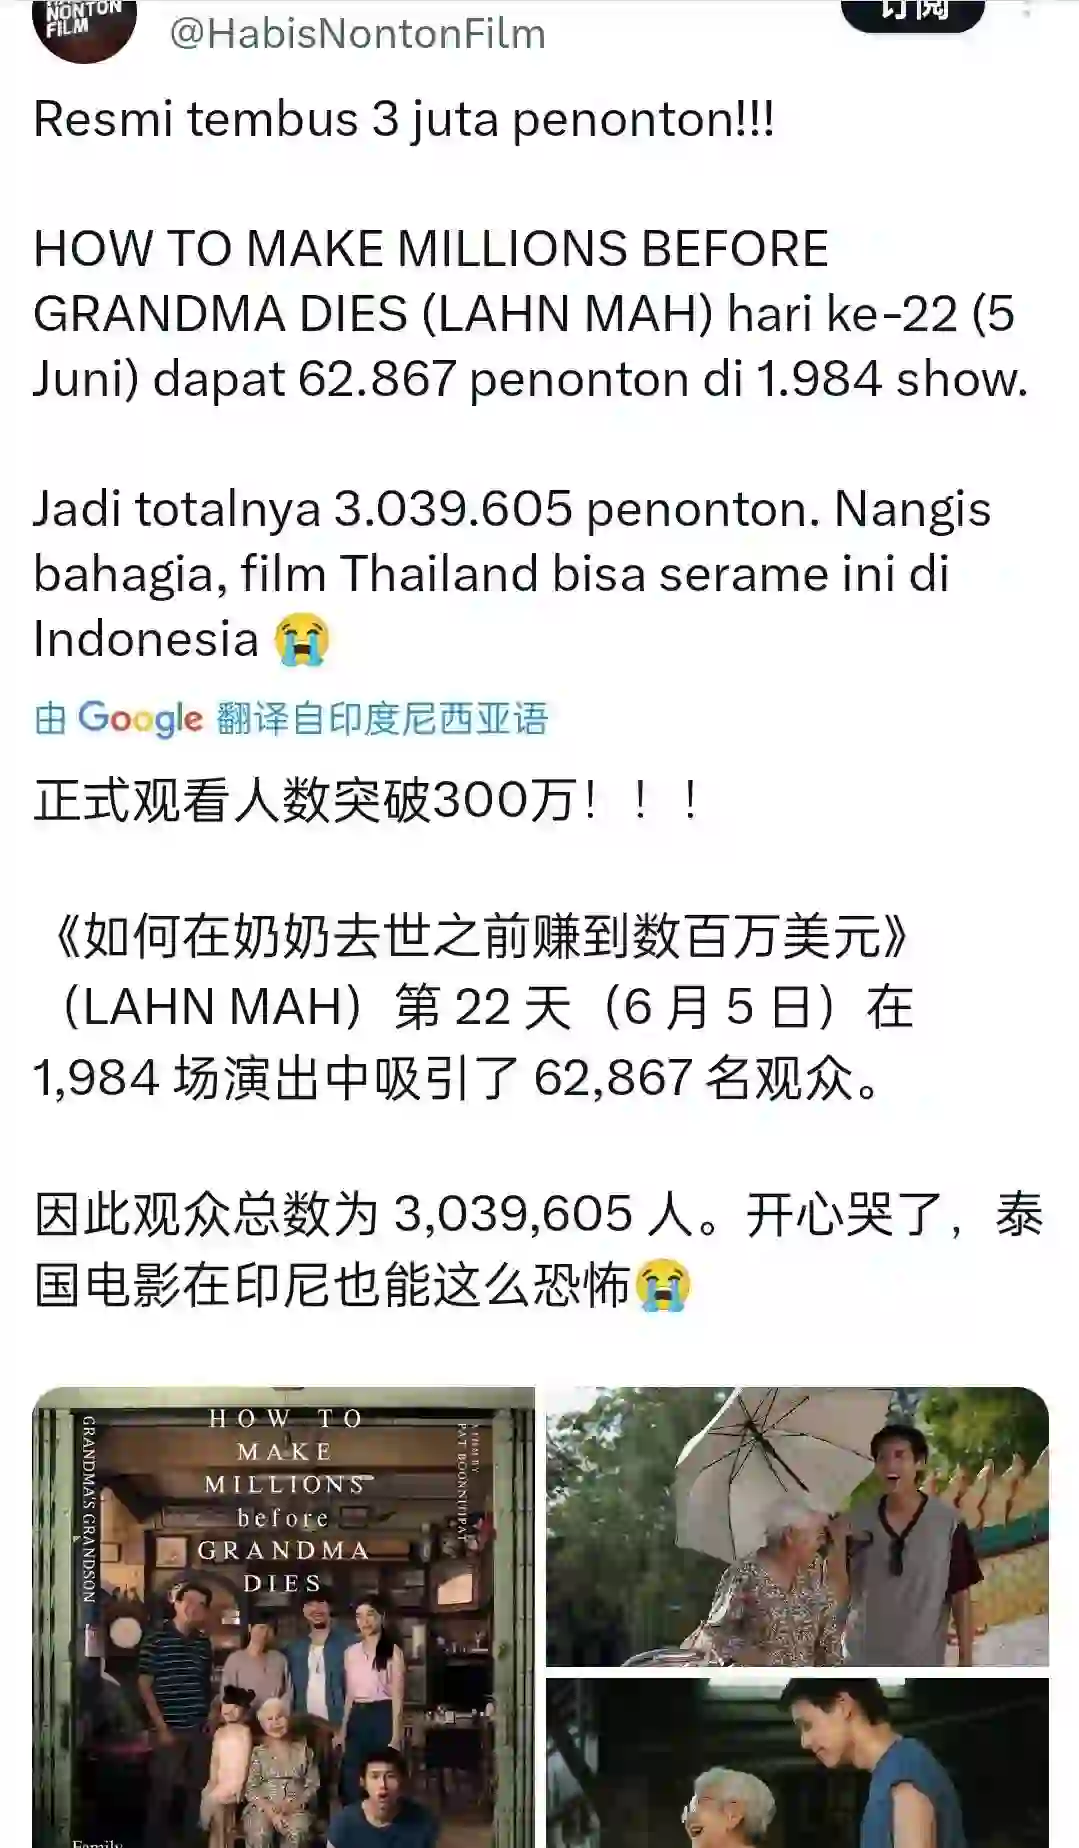 马群耀电影再创印尼亚洲电影纪录🏆